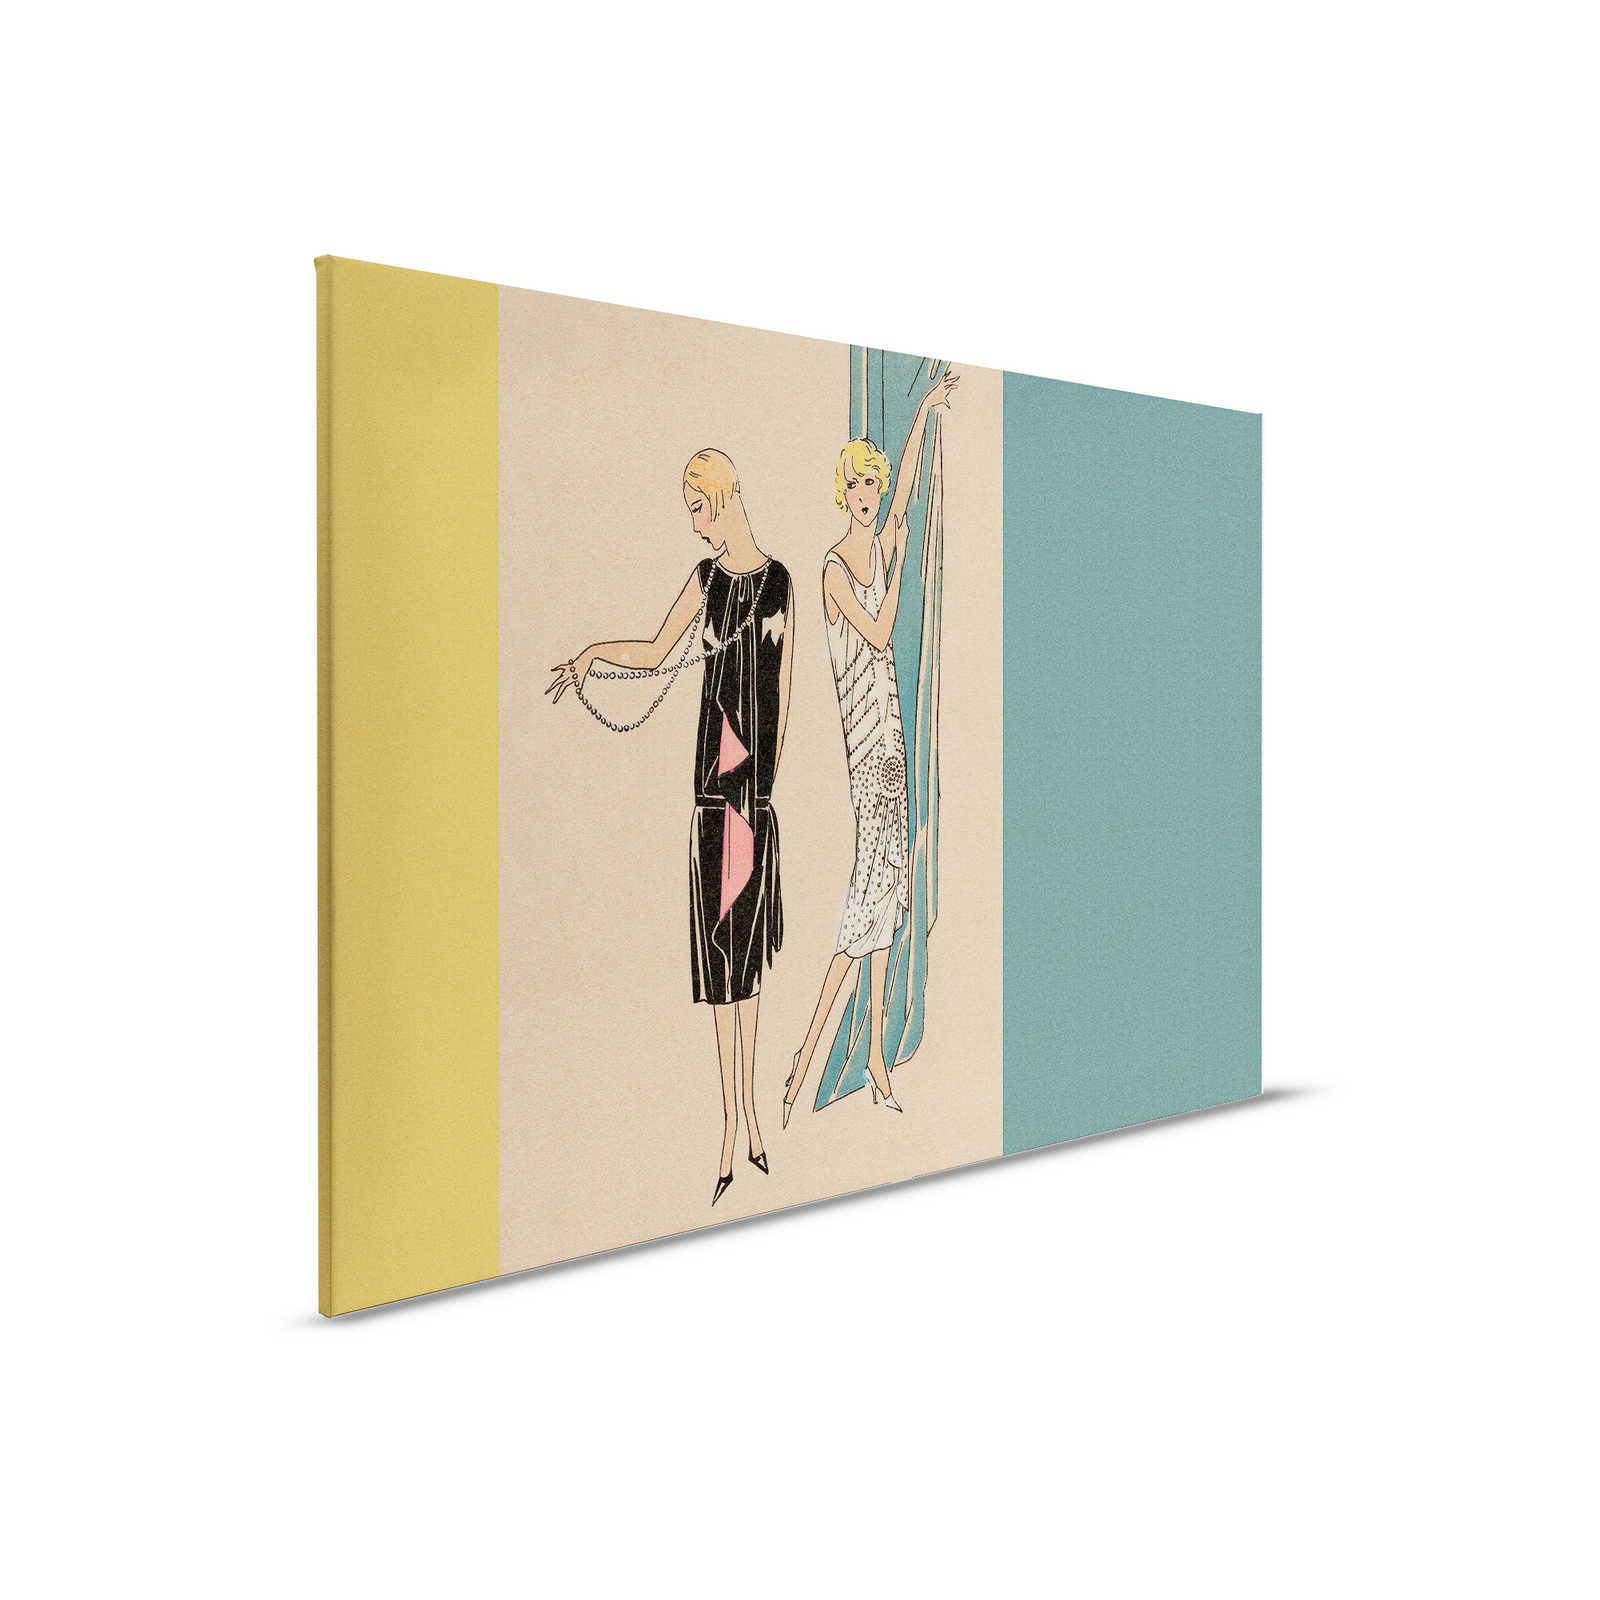 Parisienne 2 - Canvas schilderij Fashion jaren 20 Retro Stijl in Petrol & Geel - 0.90 m x 0.60 m
